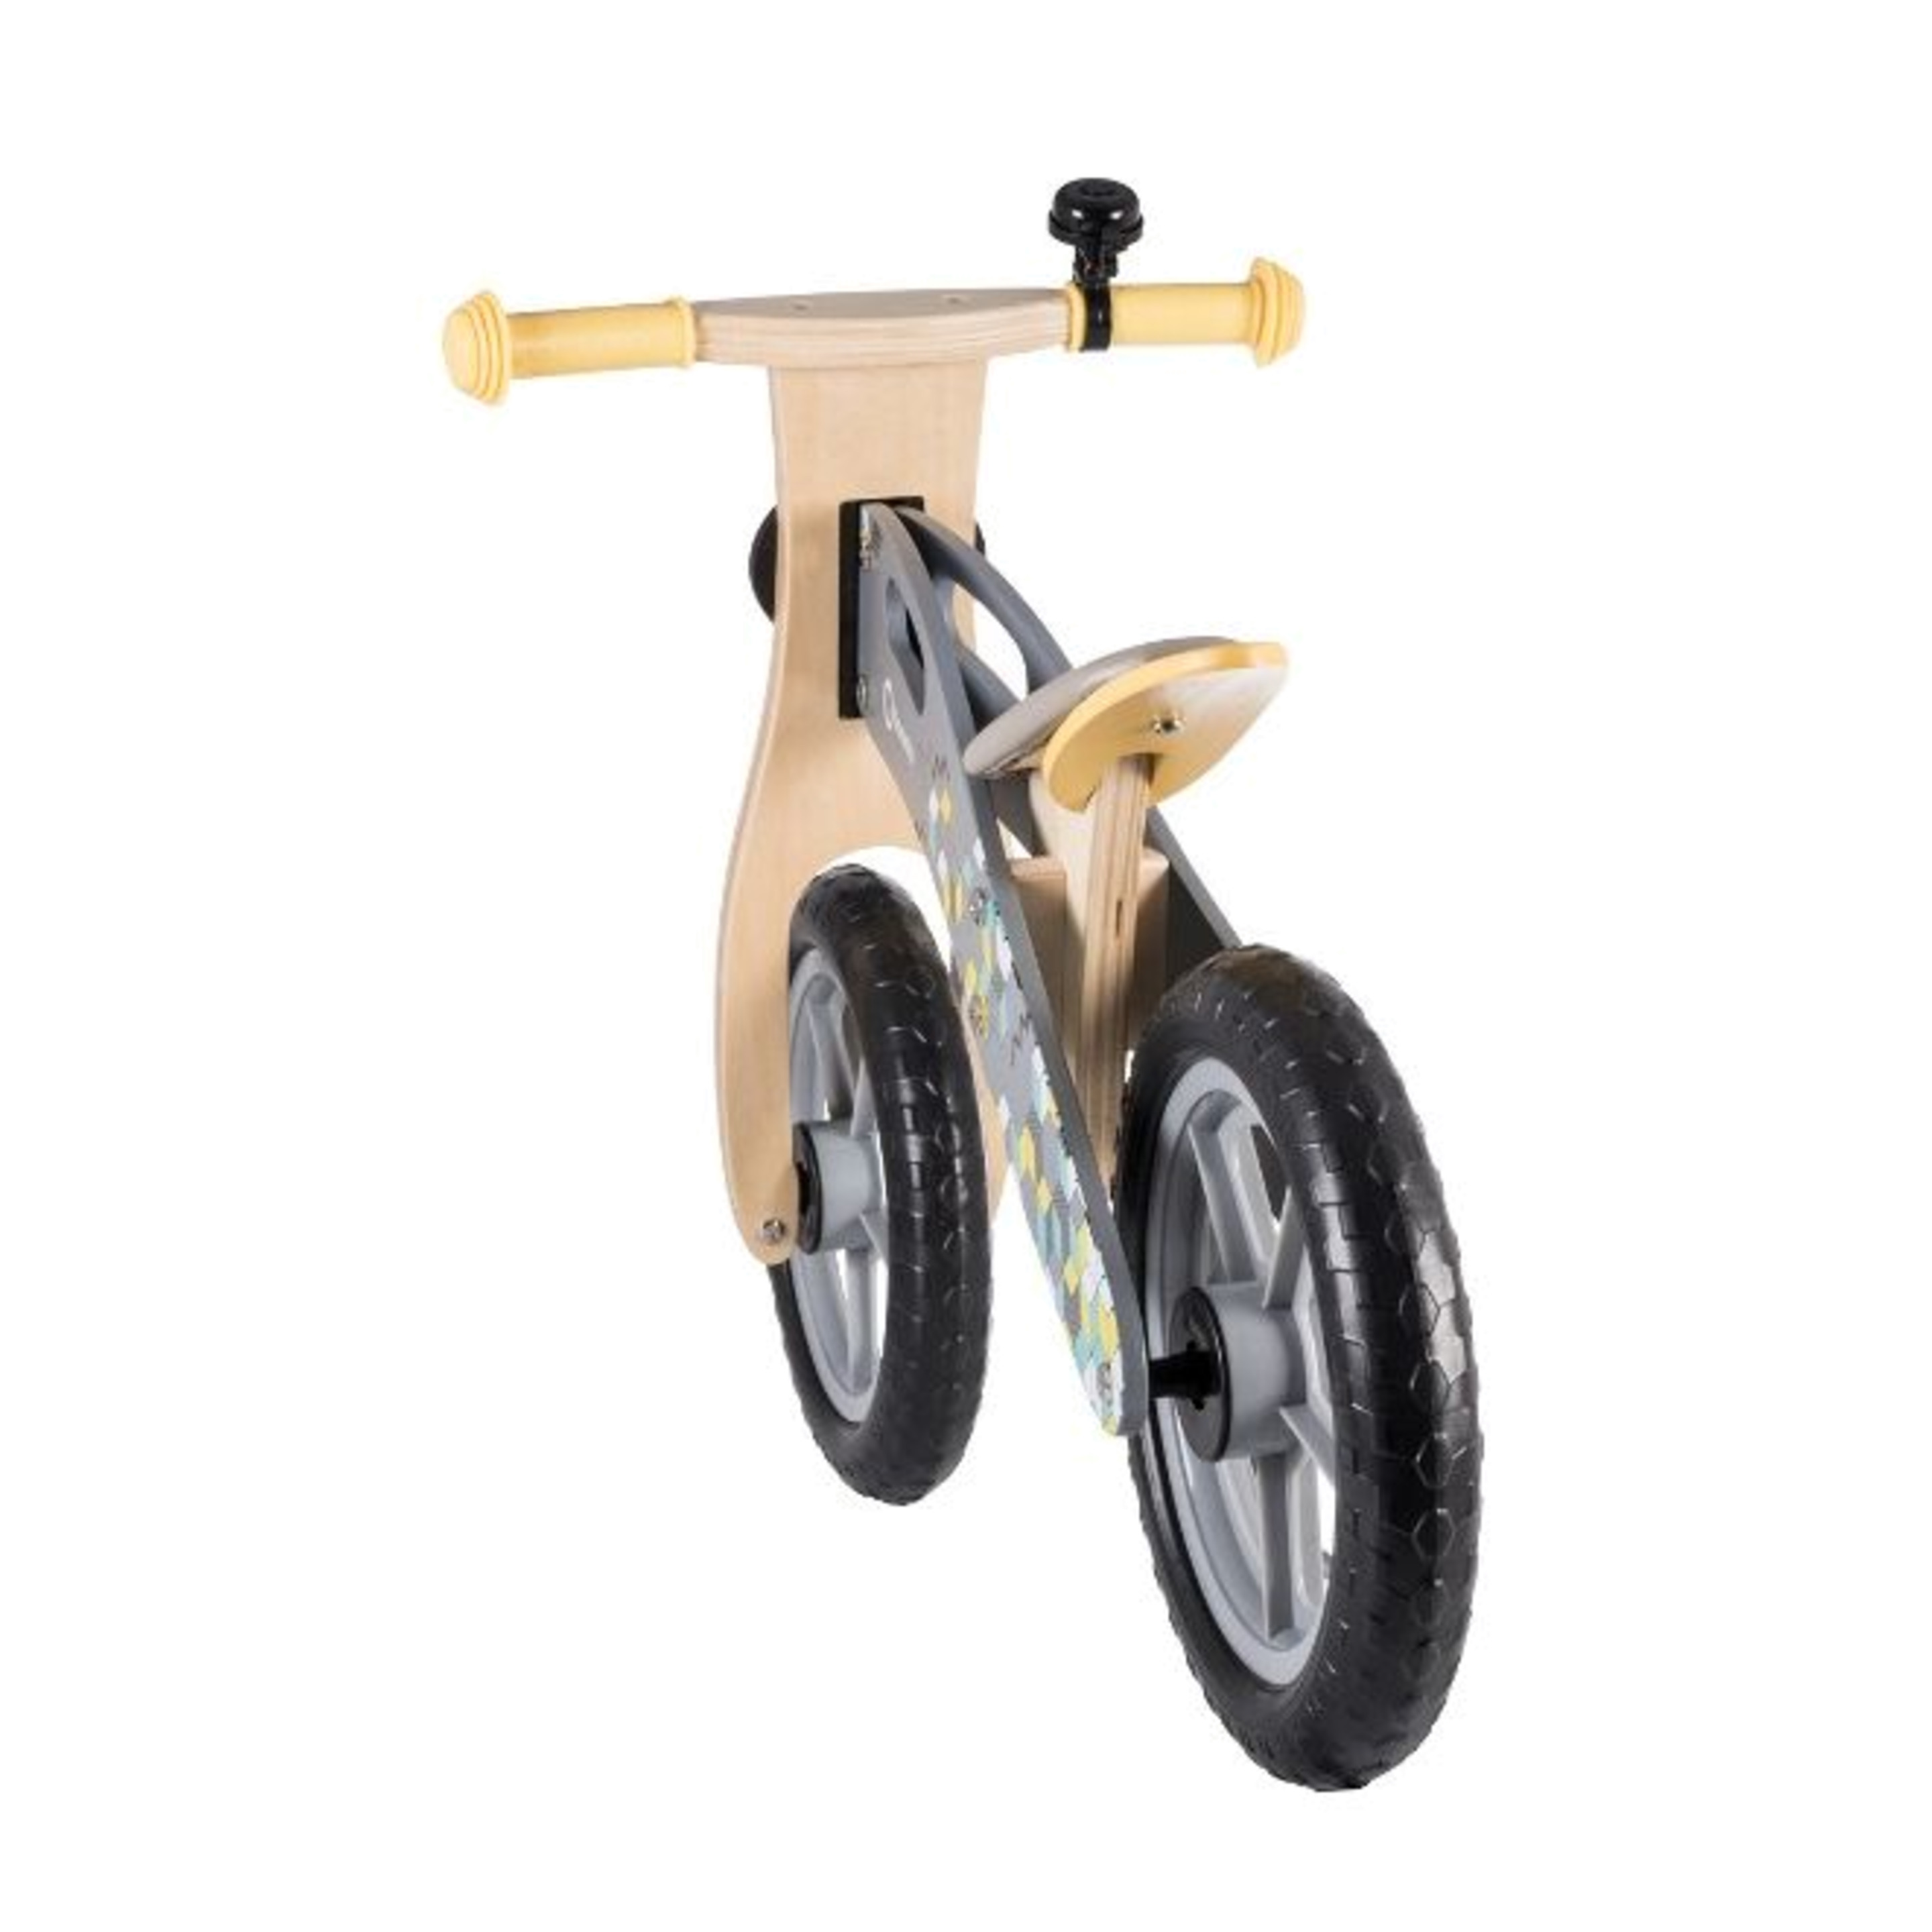 Bicicleta Infantil De Madera Casper De Lionelo